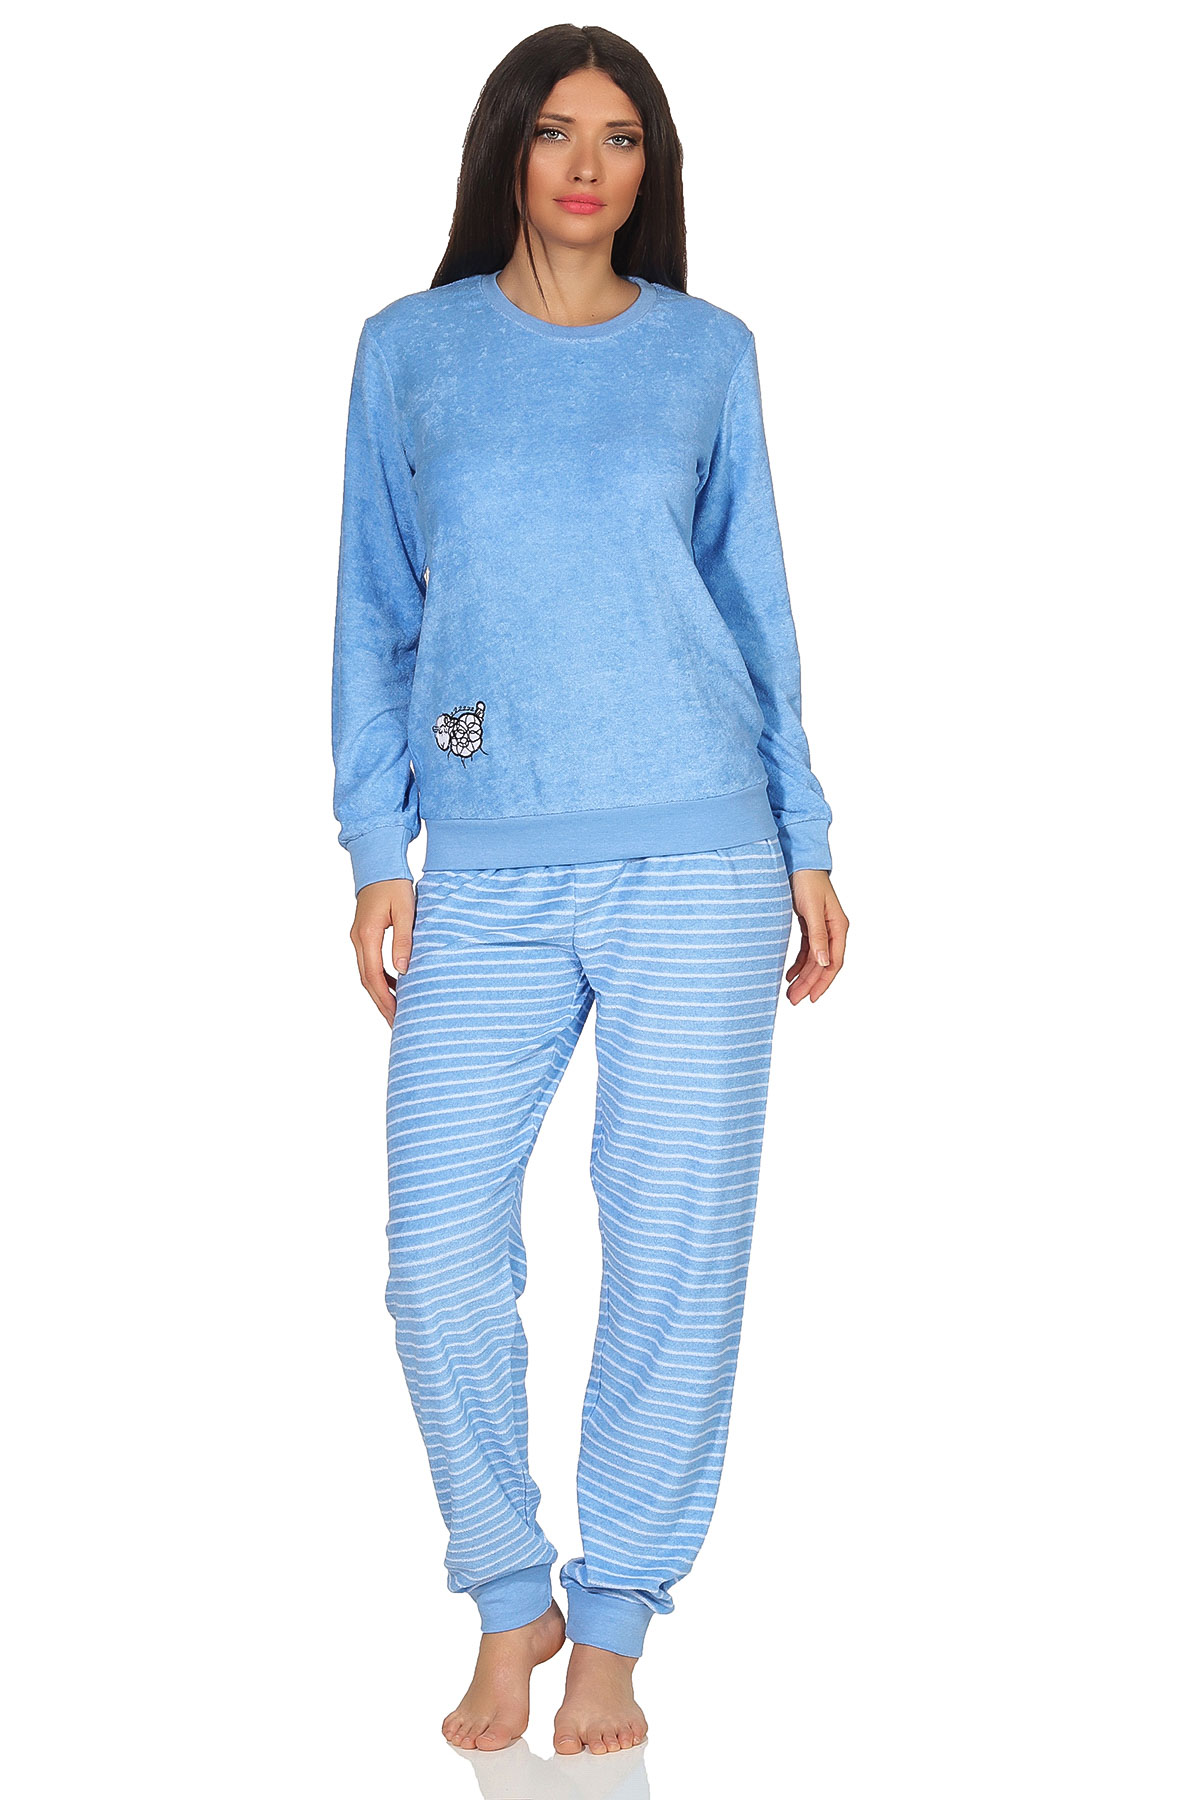 Damen Frottee Pyjama Schlafanzug mit Bündchen und süsser Tier Applikation - 202 201 13 110